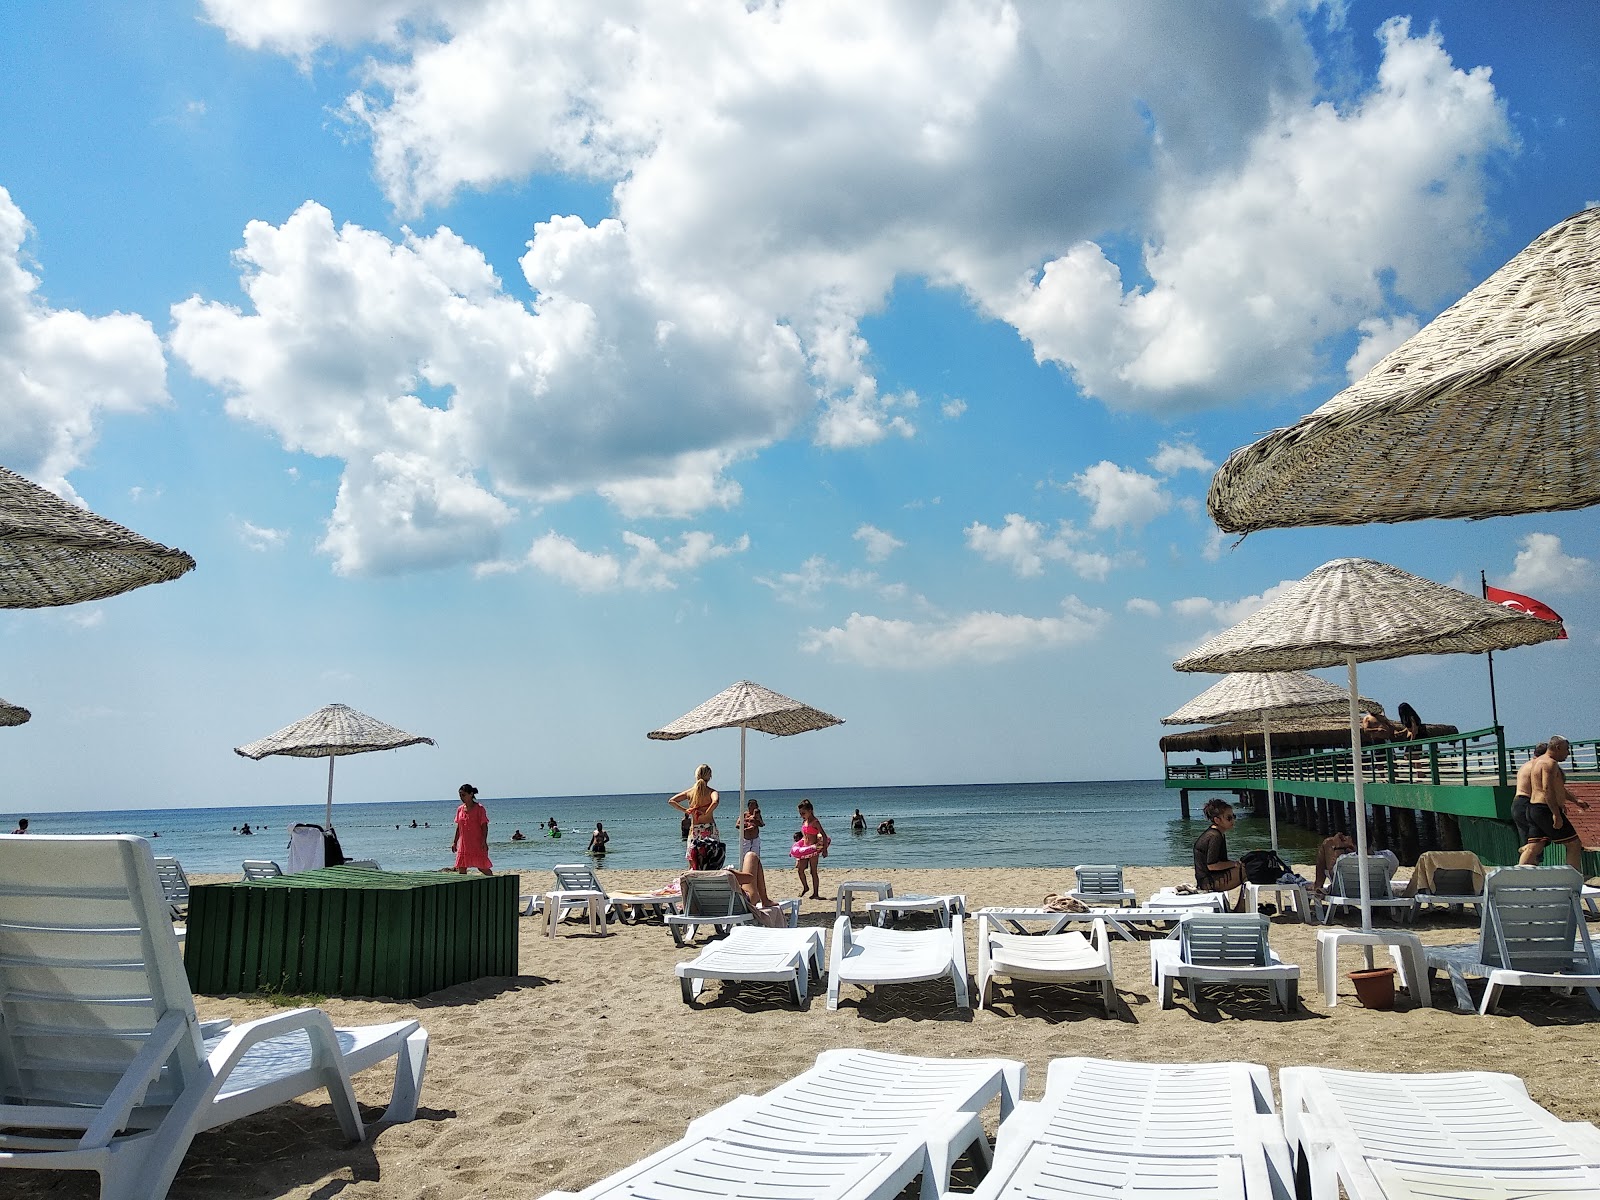 Photo de Kamiloba beach - endroit populaire parmi les connaisseurs de la détente